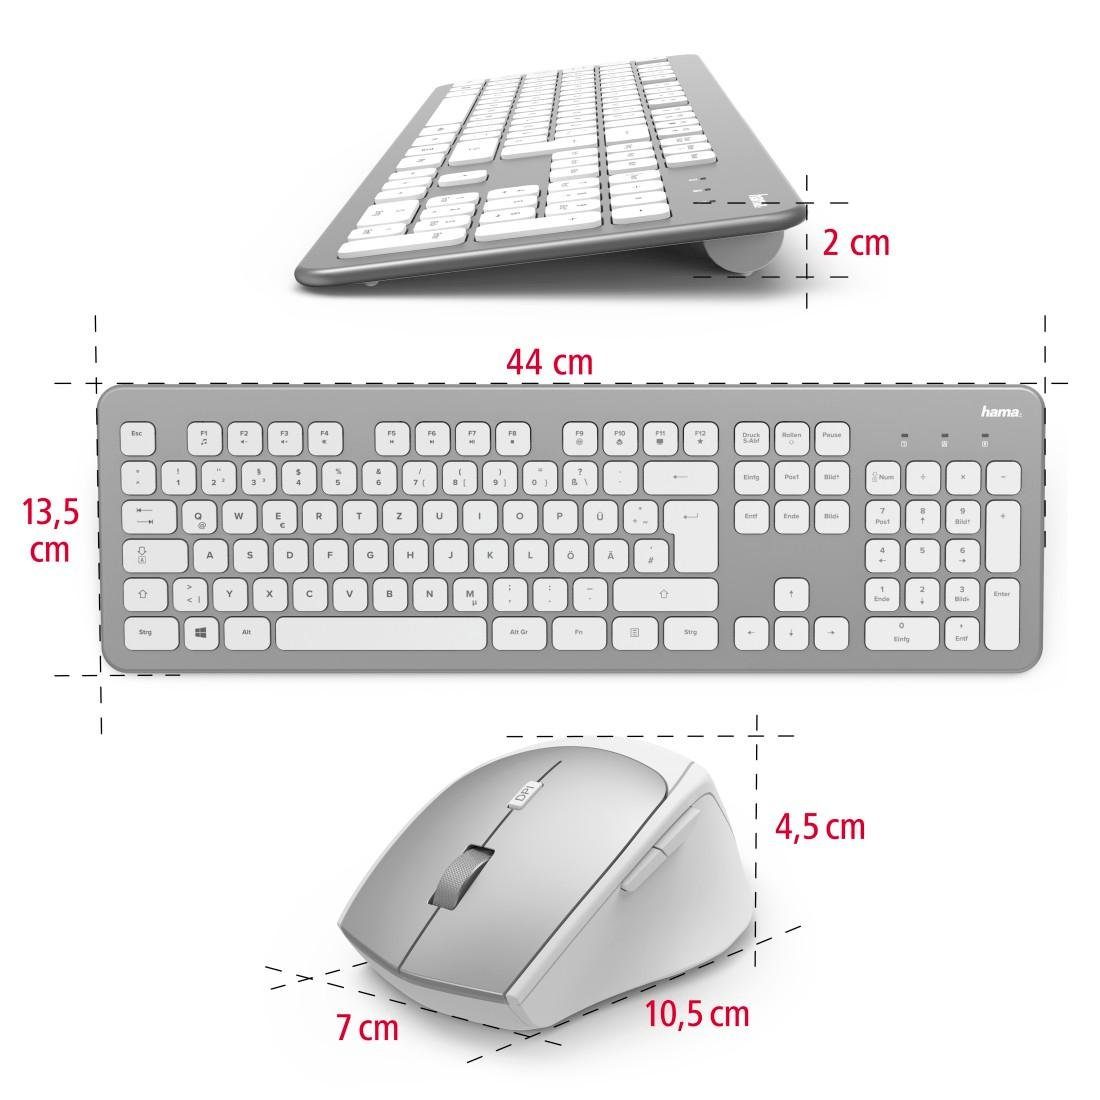 Tastatur- "KMW-700" und Hama Tastatur/Maus-Set Funktastatur-/Maus-Set Maus-Set weiß